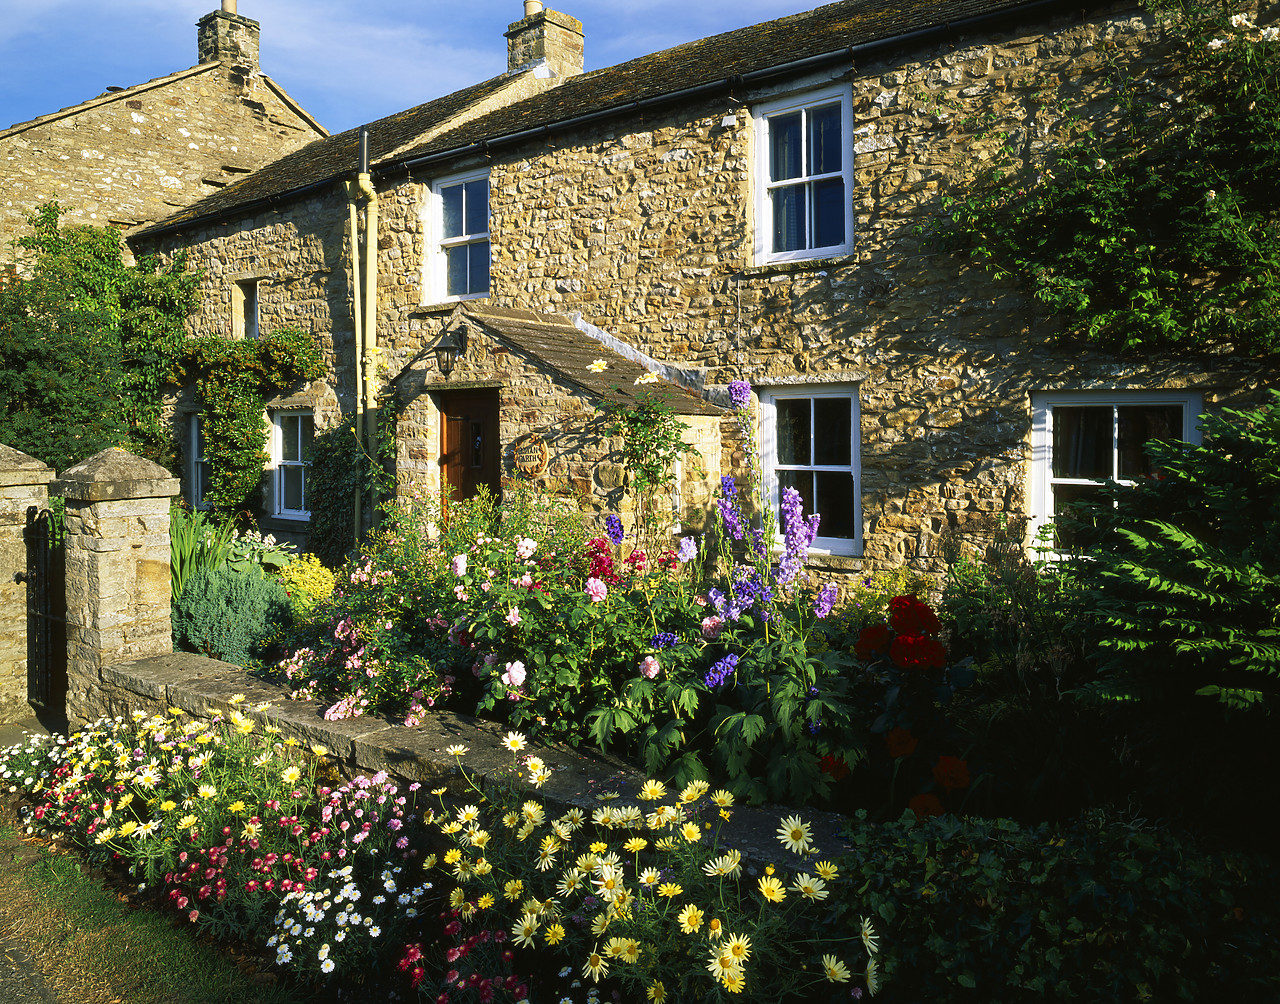 #060113-1 - Cottage & Garden, Grinton, North Yorkshire, England